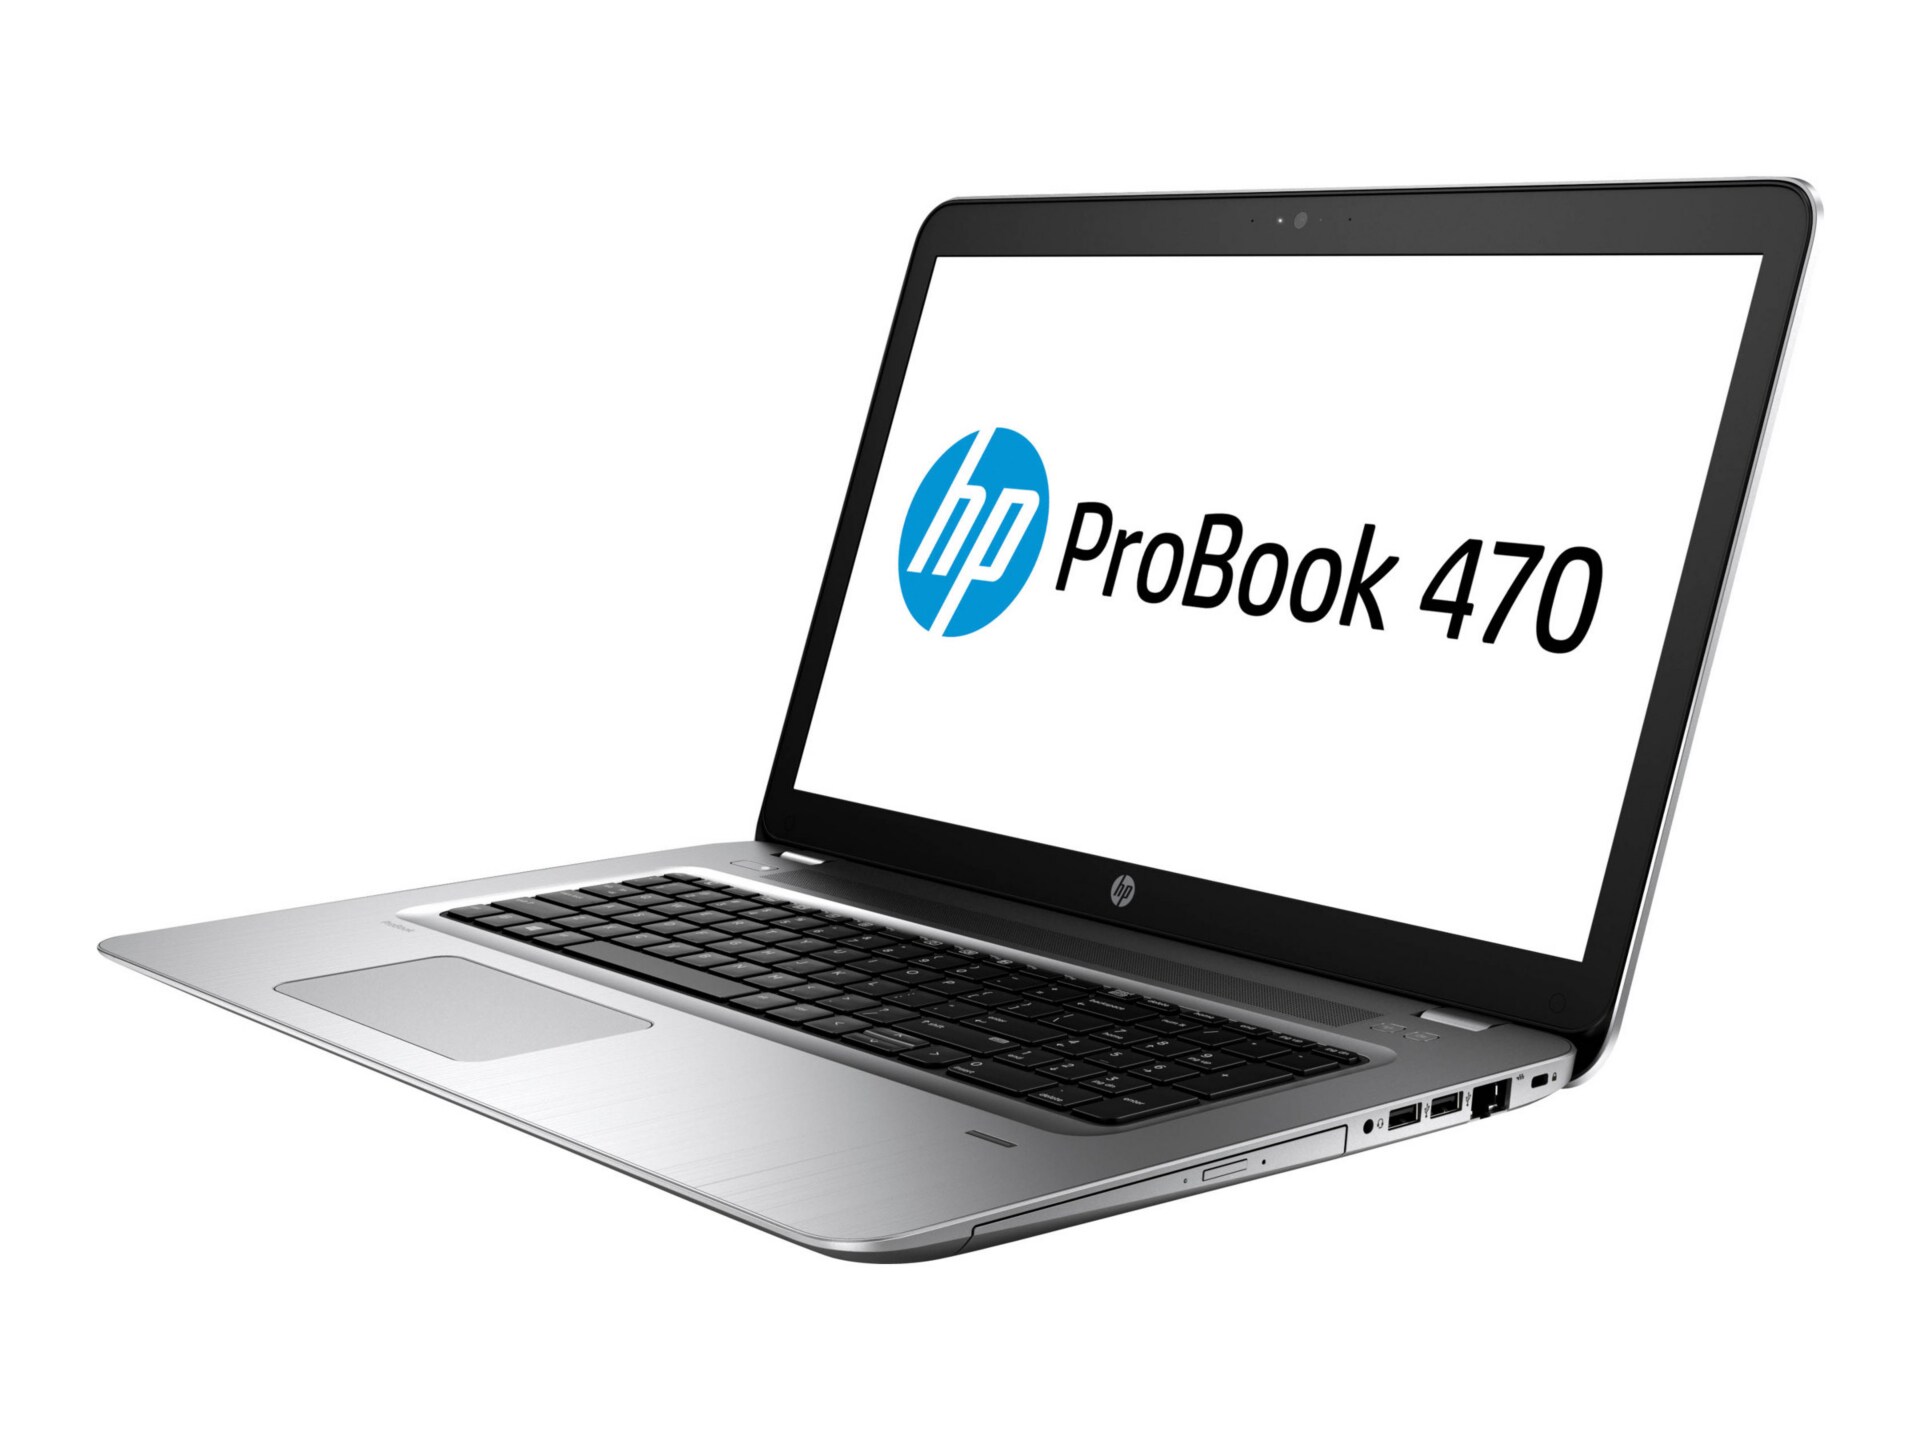 HP ProBook 470 G4 - 17.3" - Core i7 7500U - 8 GB RAM - 1 TB HDD - US